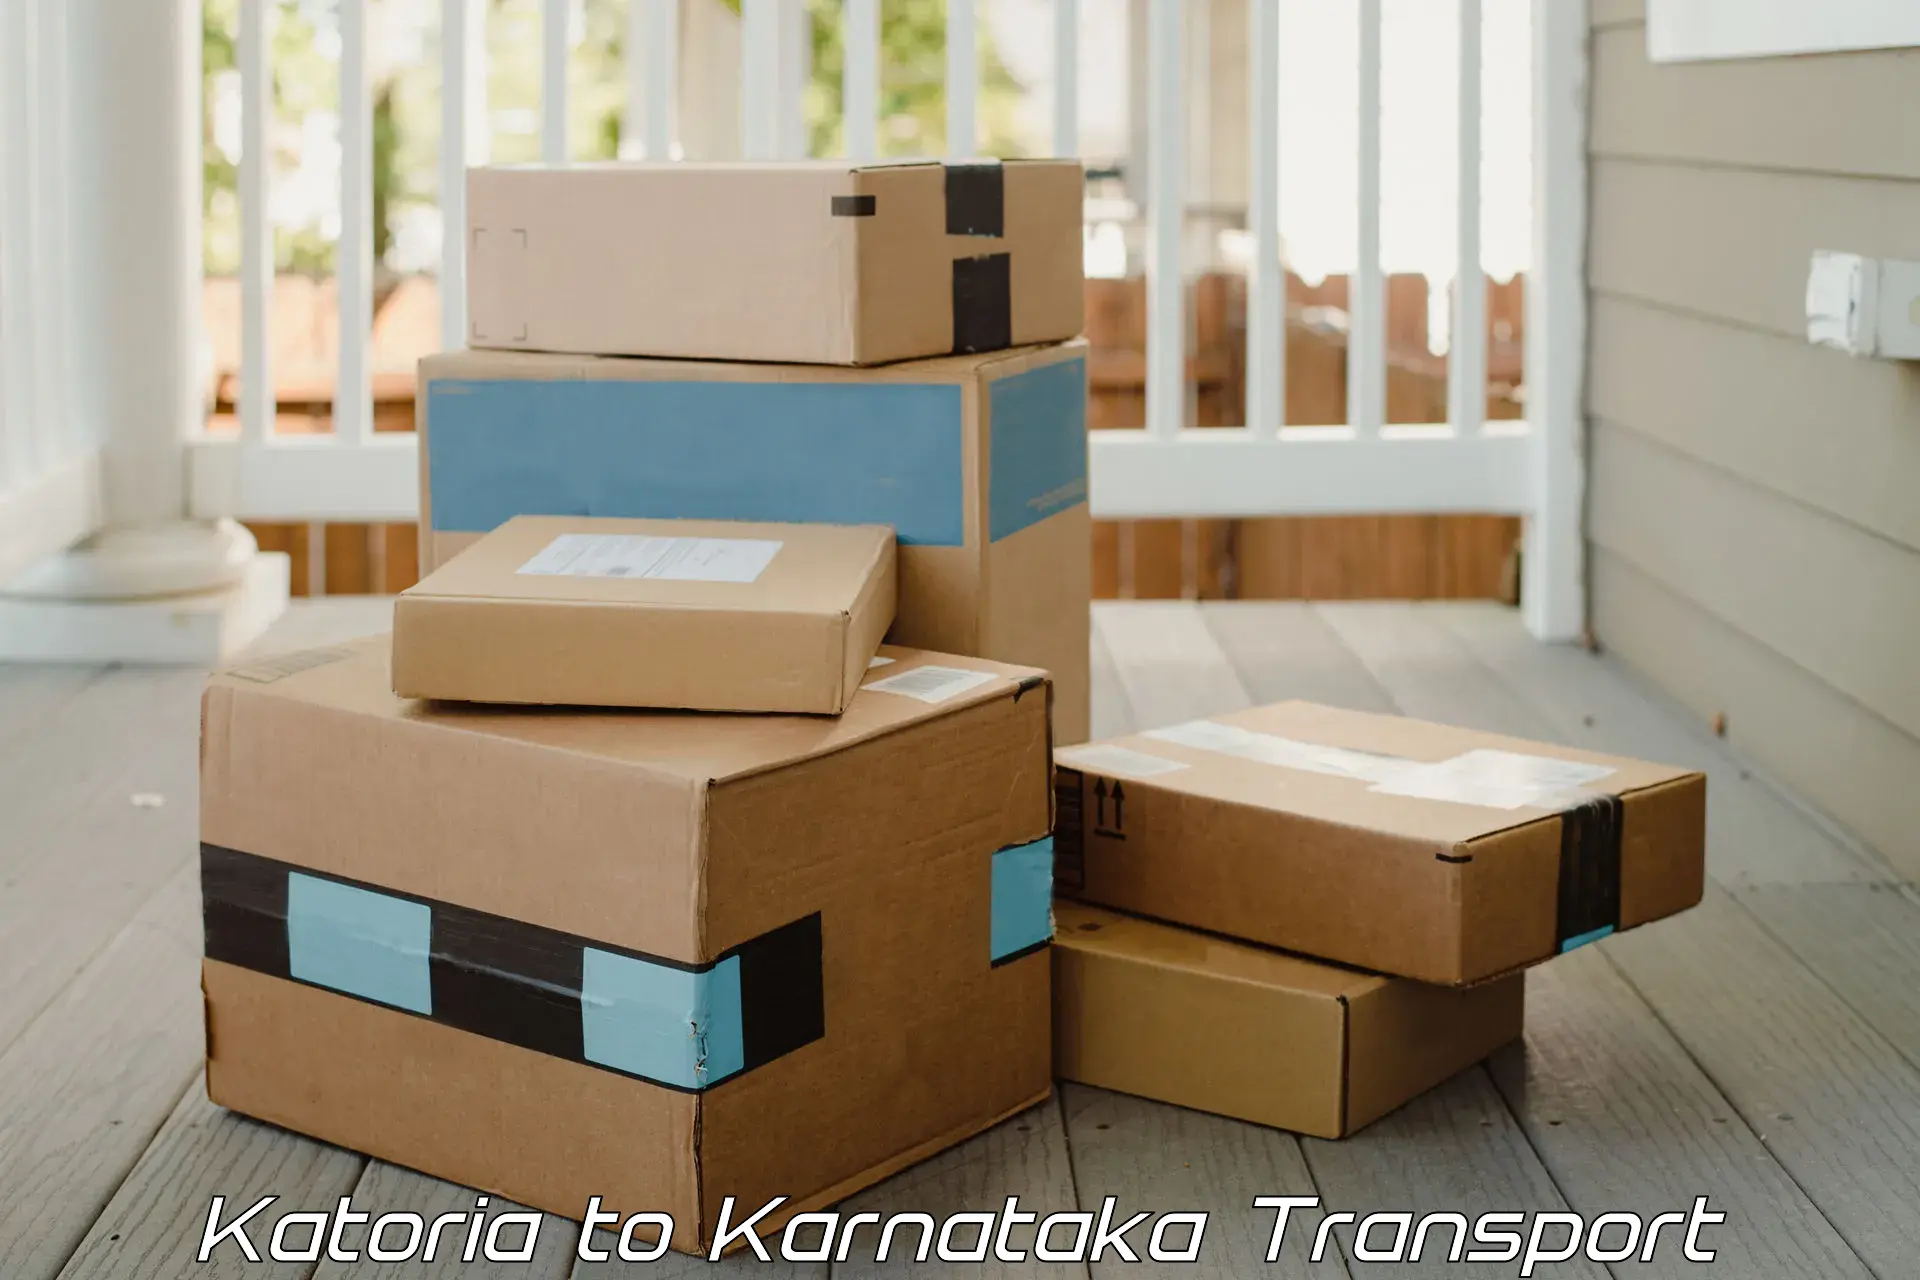 Parcel transport services Katoria to Kolhar